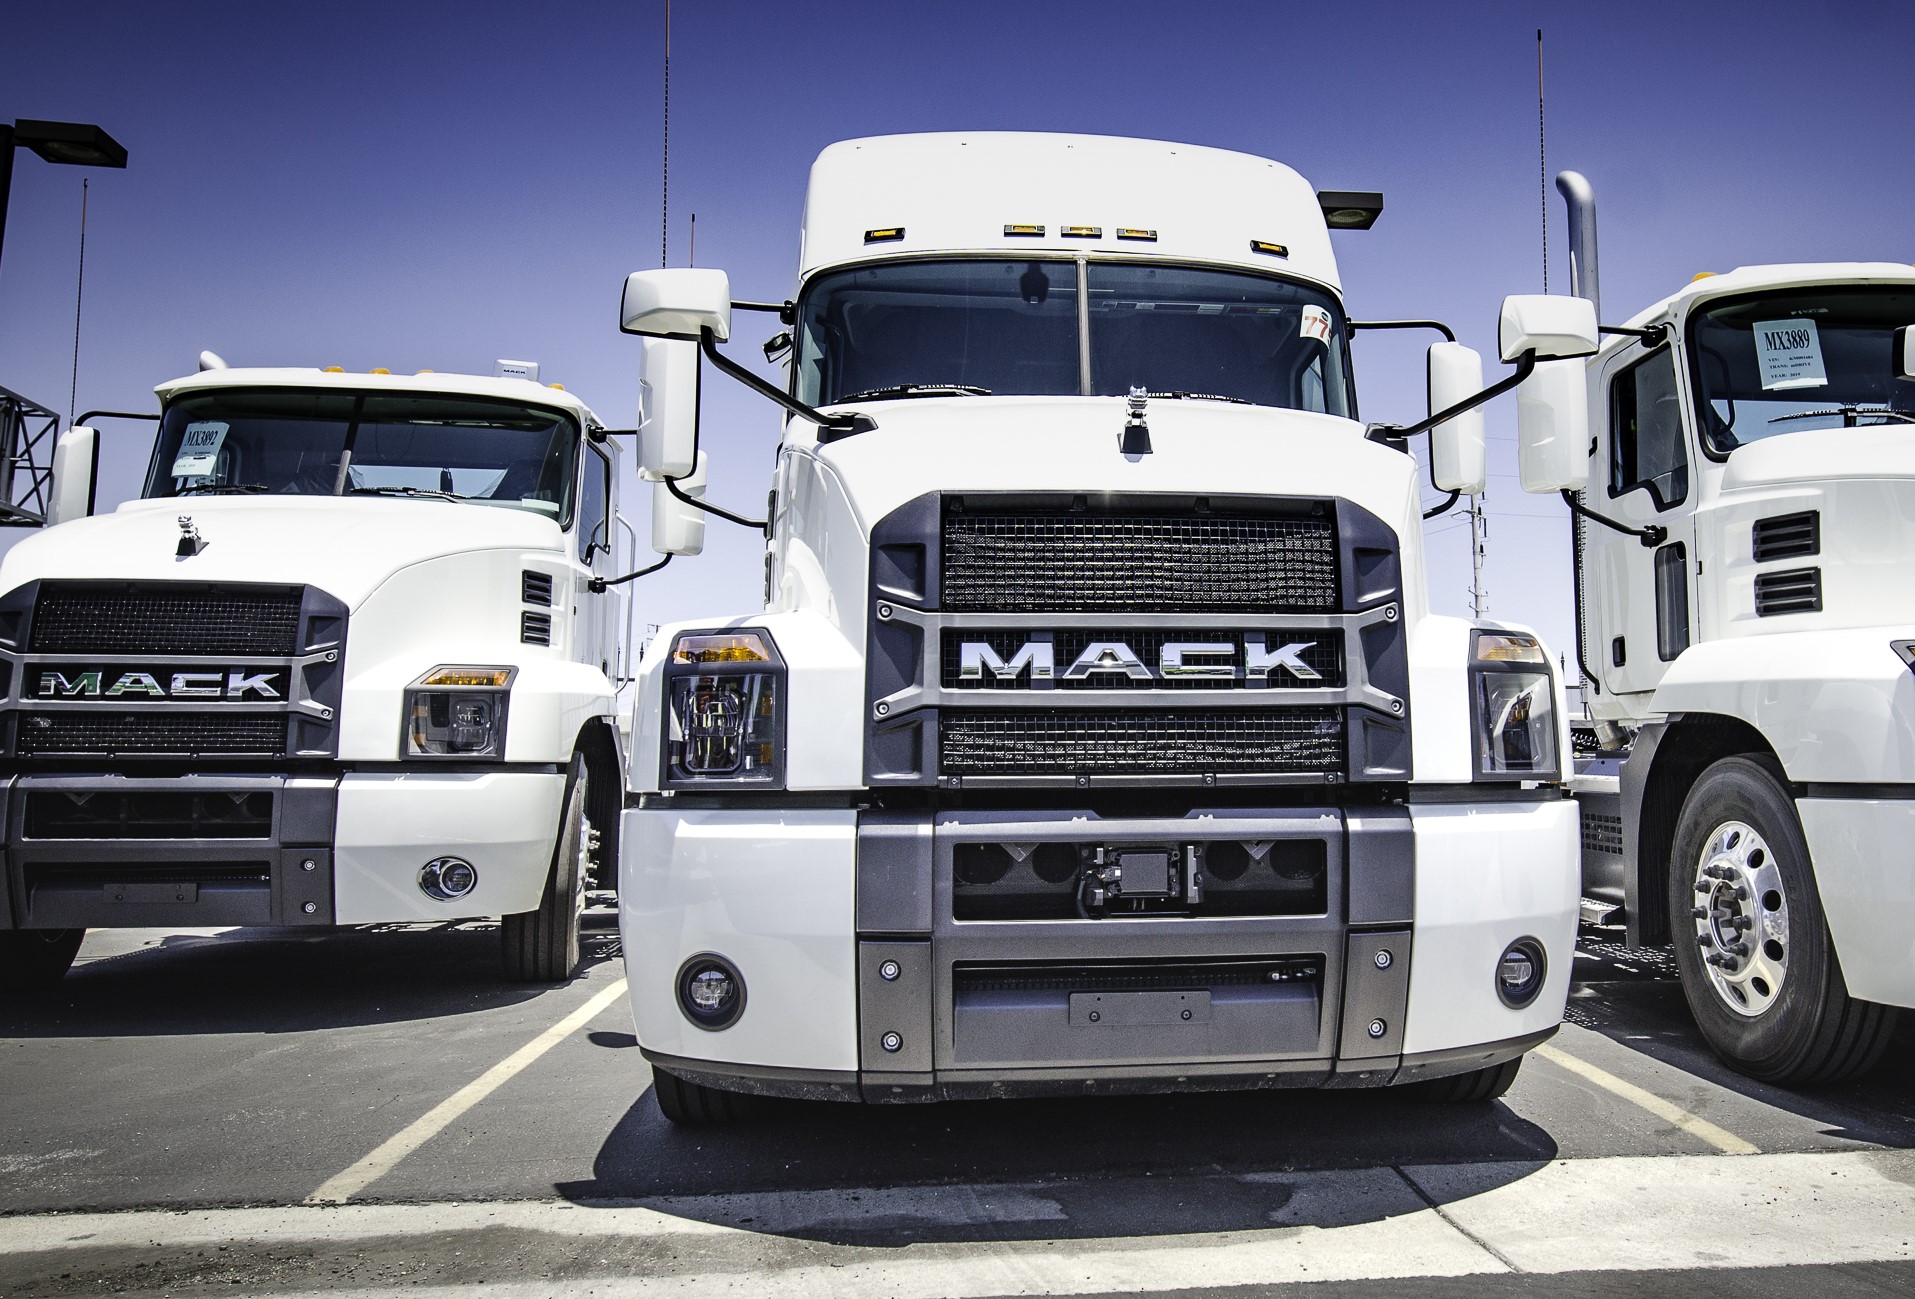 Mack Trucks settles with UAW on longer agreement - FreightWaves